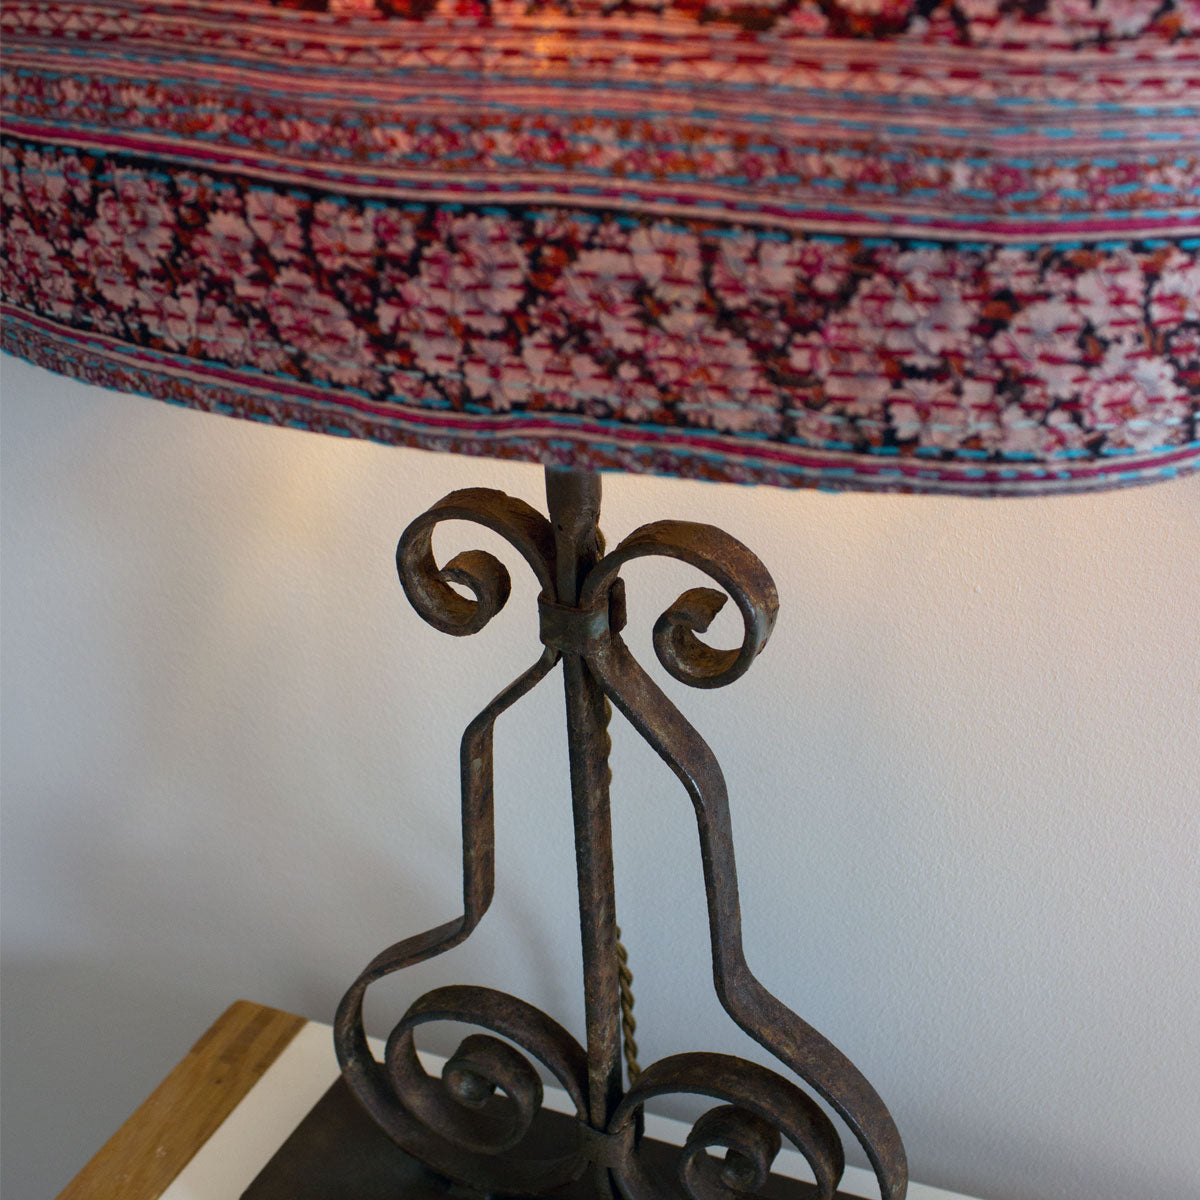 Lampe de table Bela recyclée à partir de récupération architecturale et abat-jour Kantha